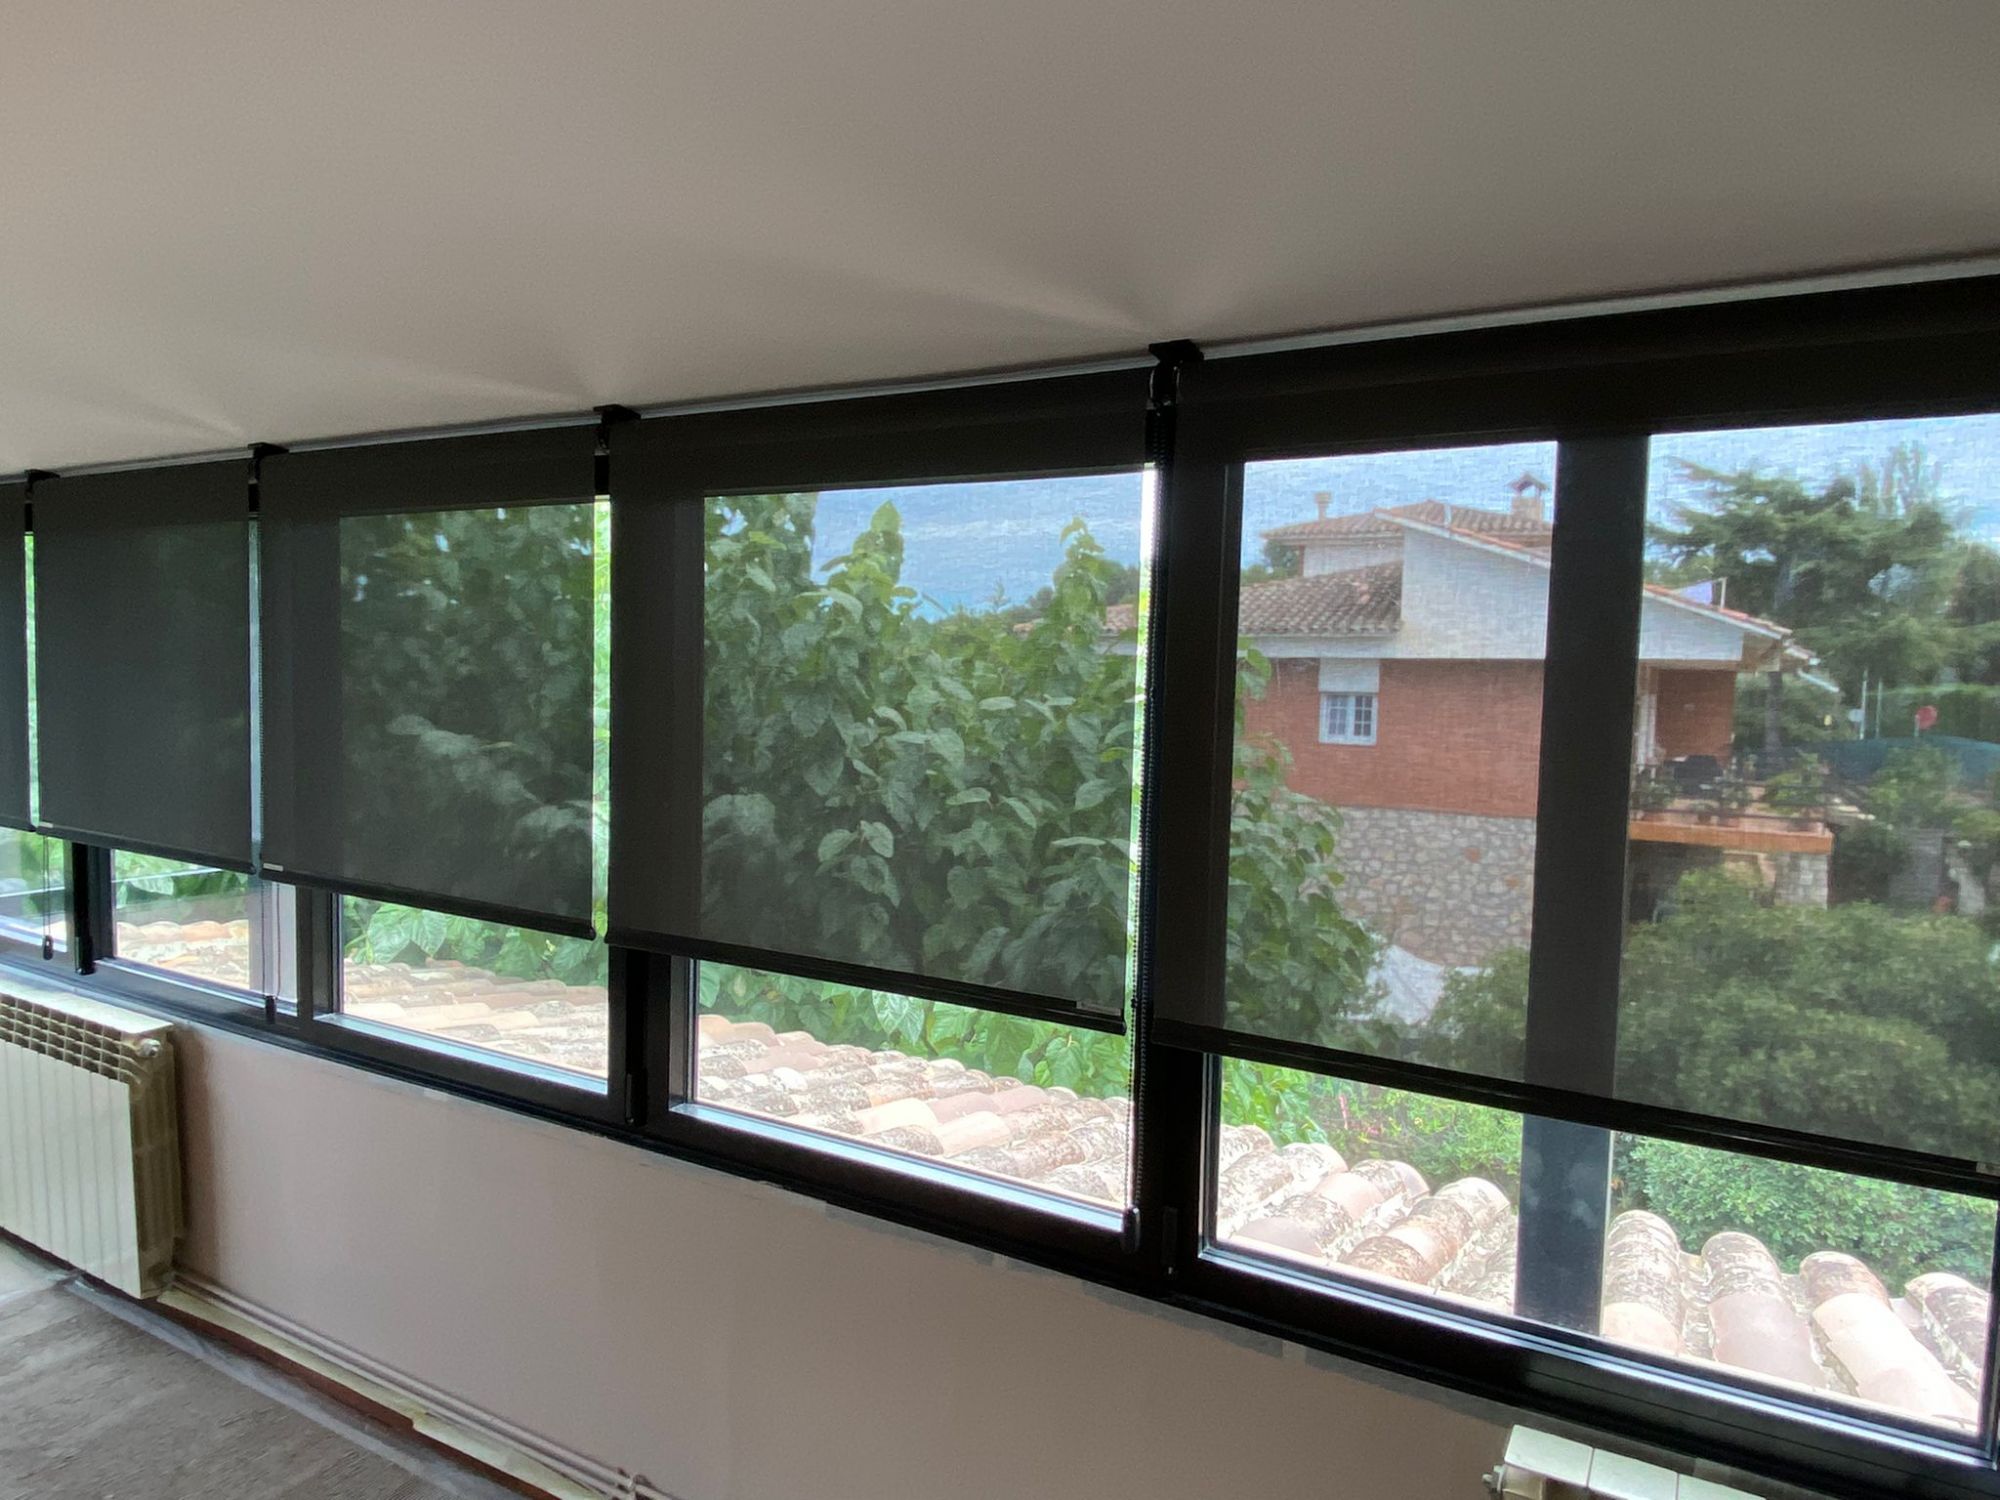 Cortinas enrollables con tejido técnico screen de color negro instaladas en ventanas de vivienda en Cobera del Llobregat